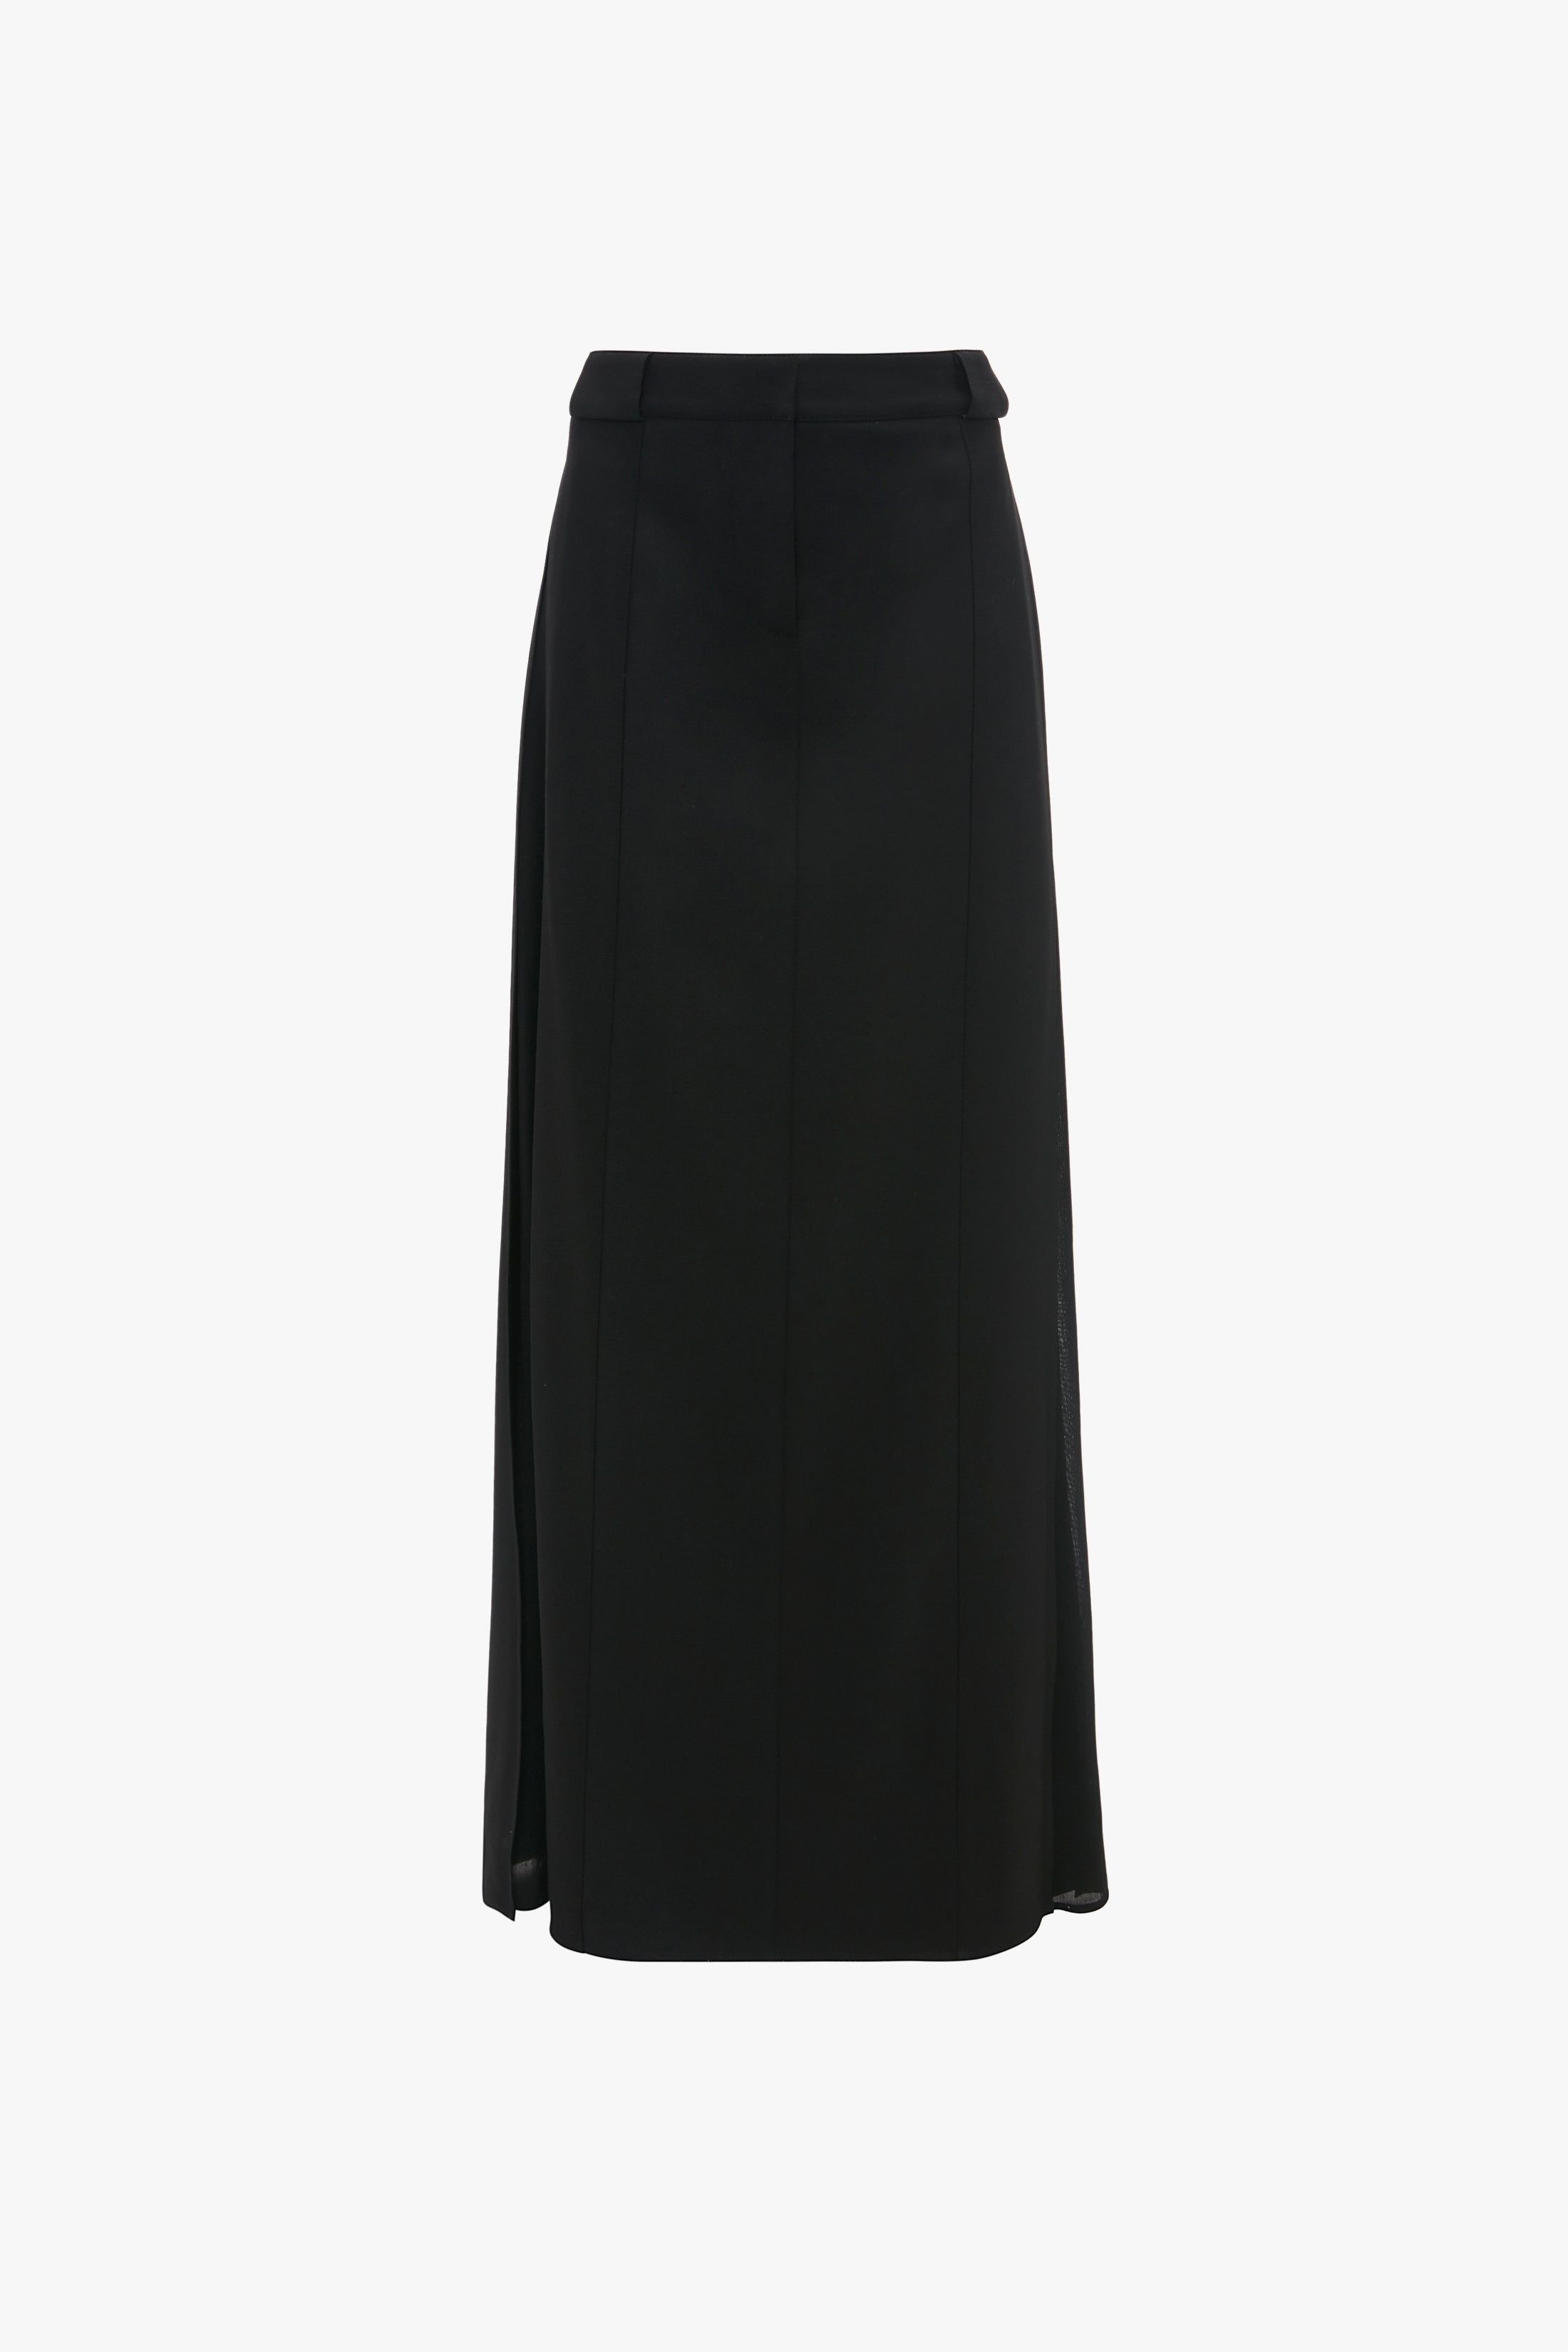 Tailored Floor-Length Skirt In Black - 1